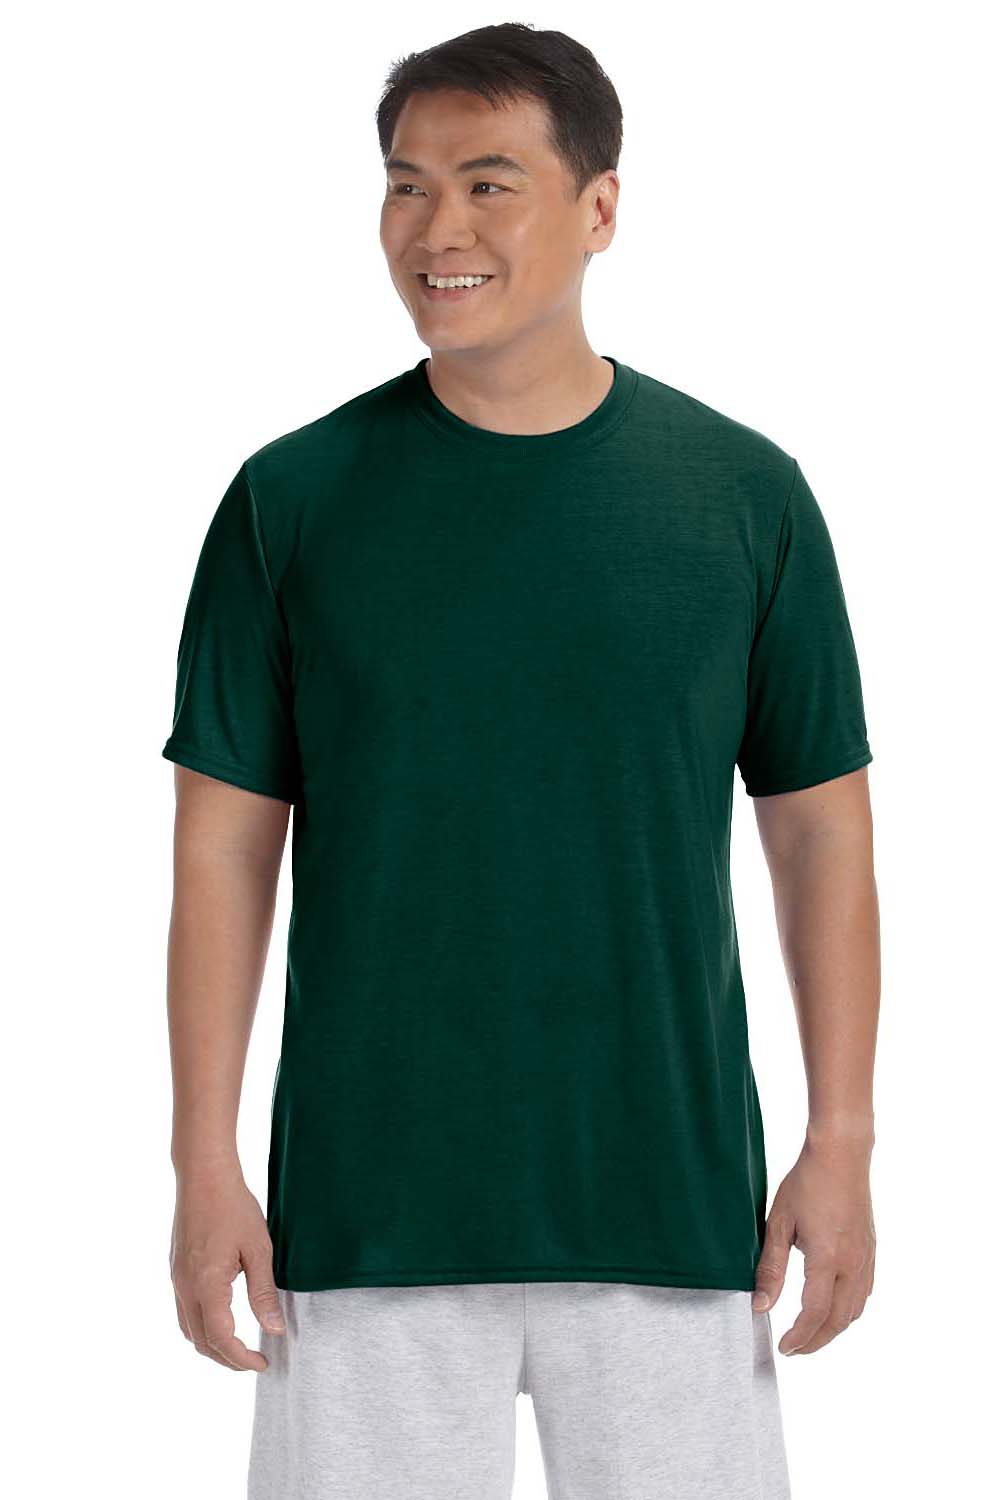 Gildan G420 Mens Performance Jersey Moisture Wicking Short Sleeve Crewneck T-Shirt Forest Green Front